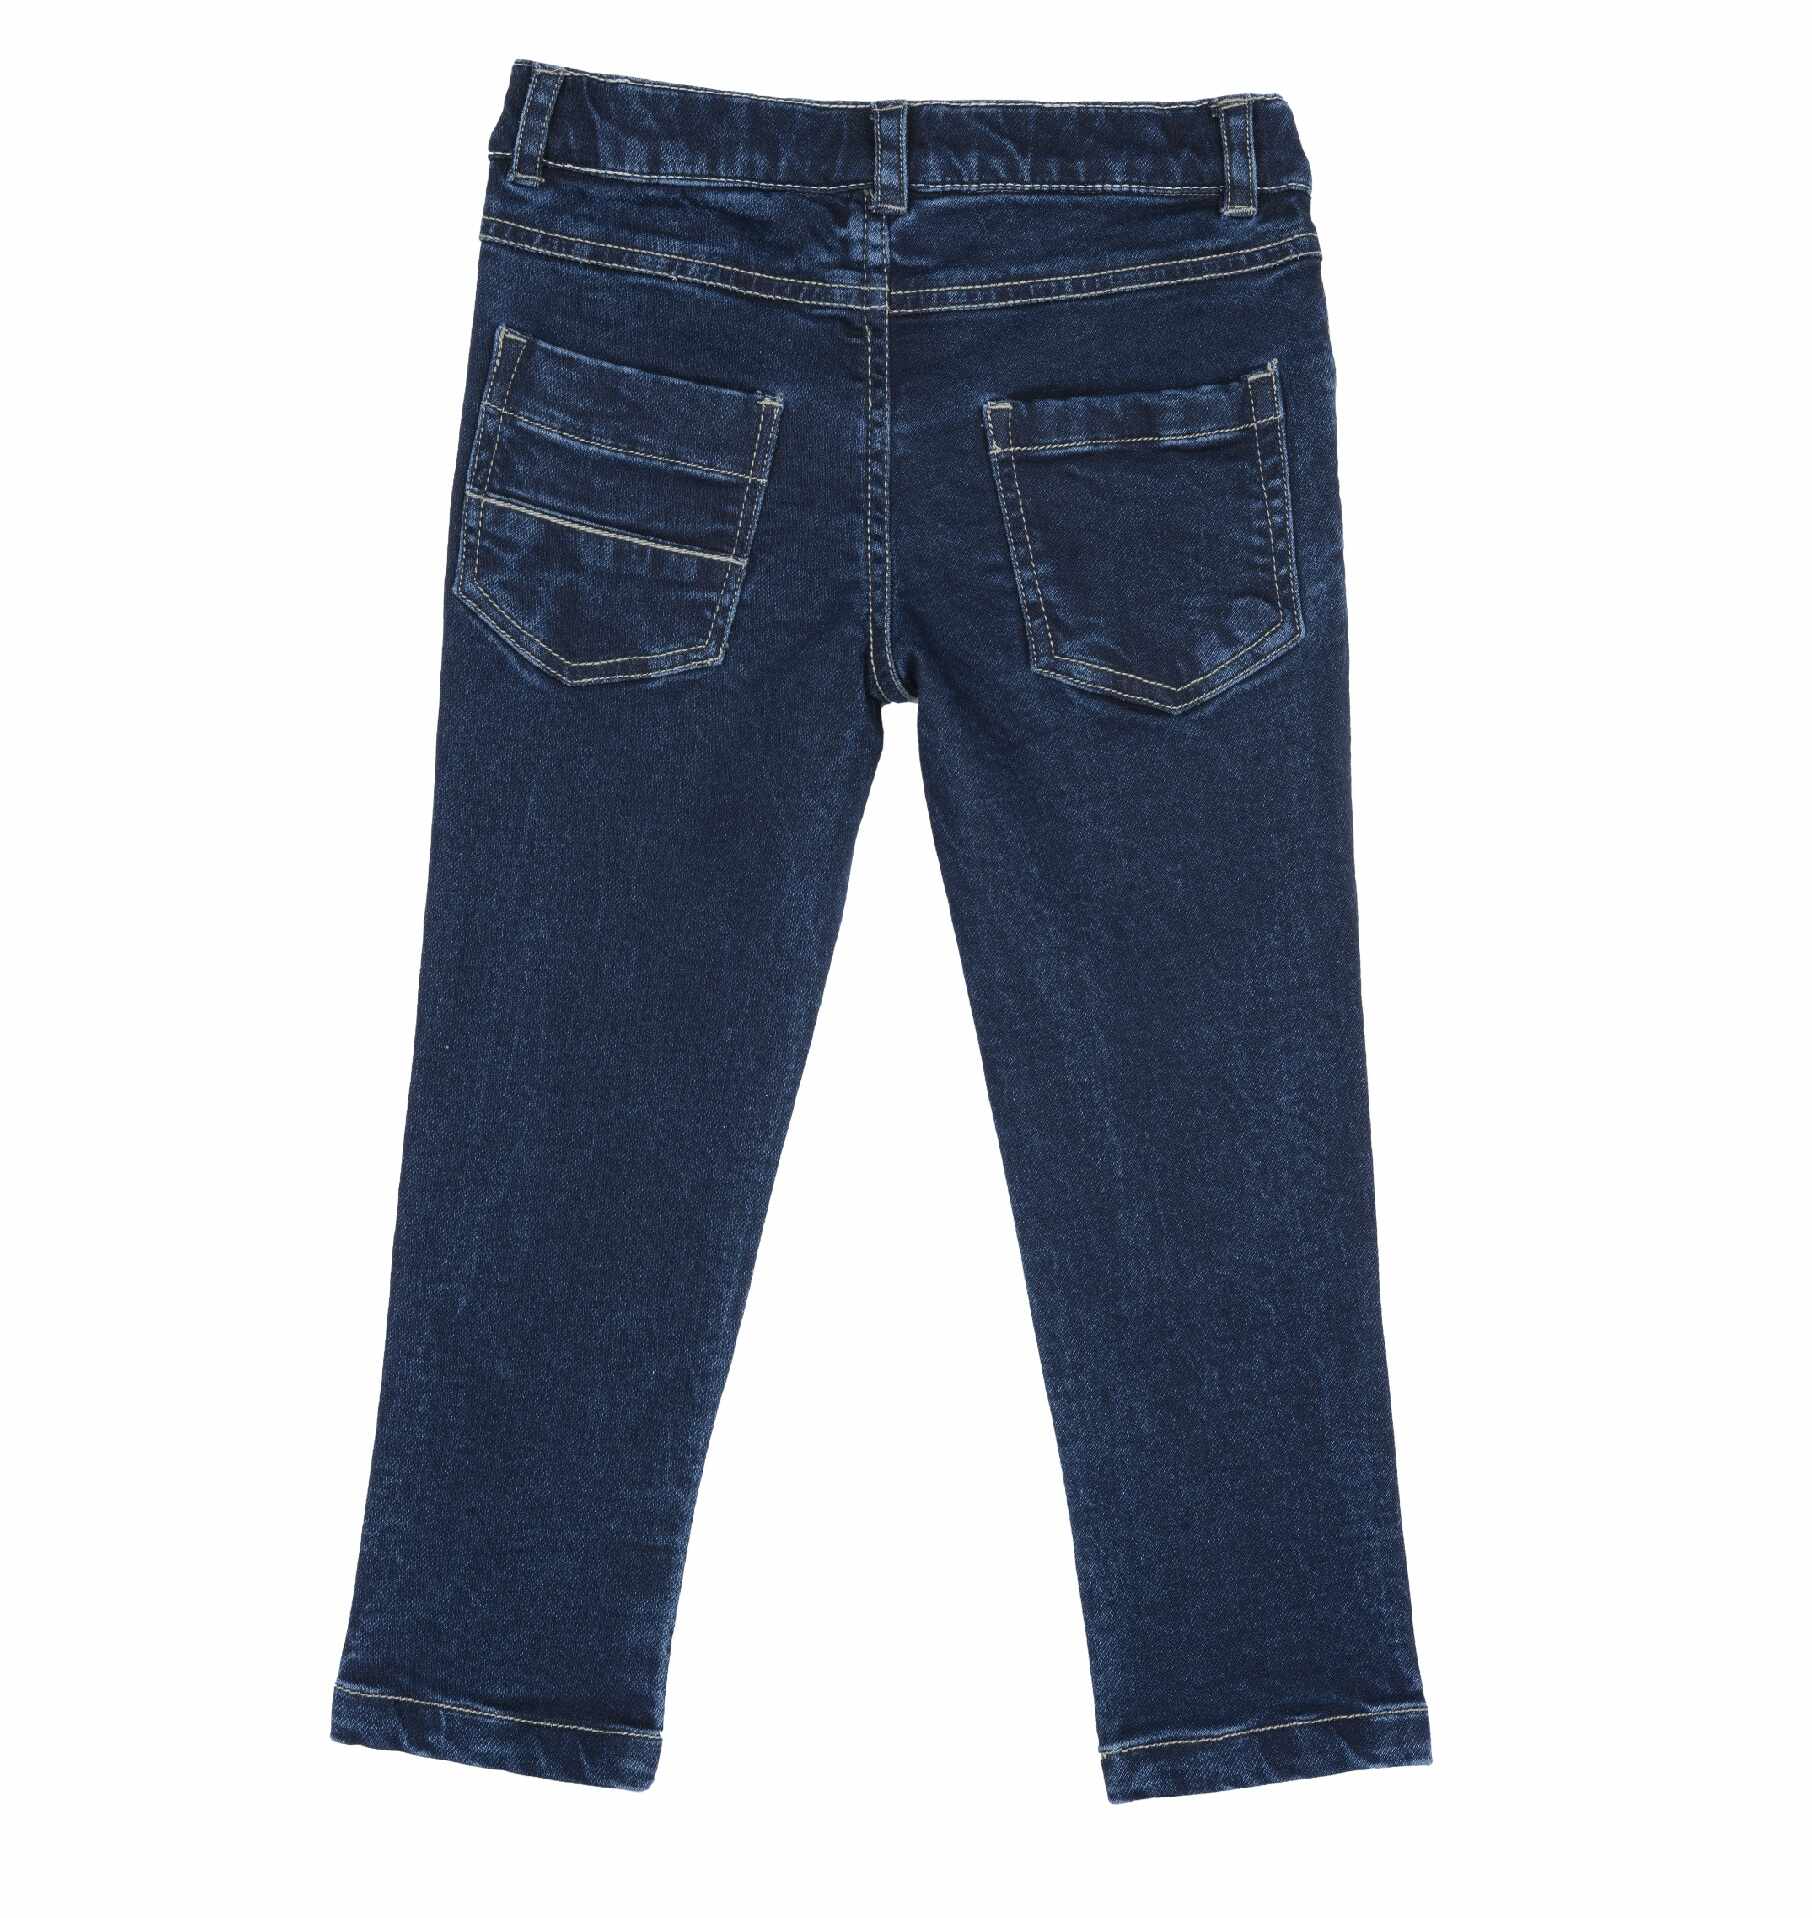 Pantaloni copii Chicco, albastru inchis, 08702-63MC